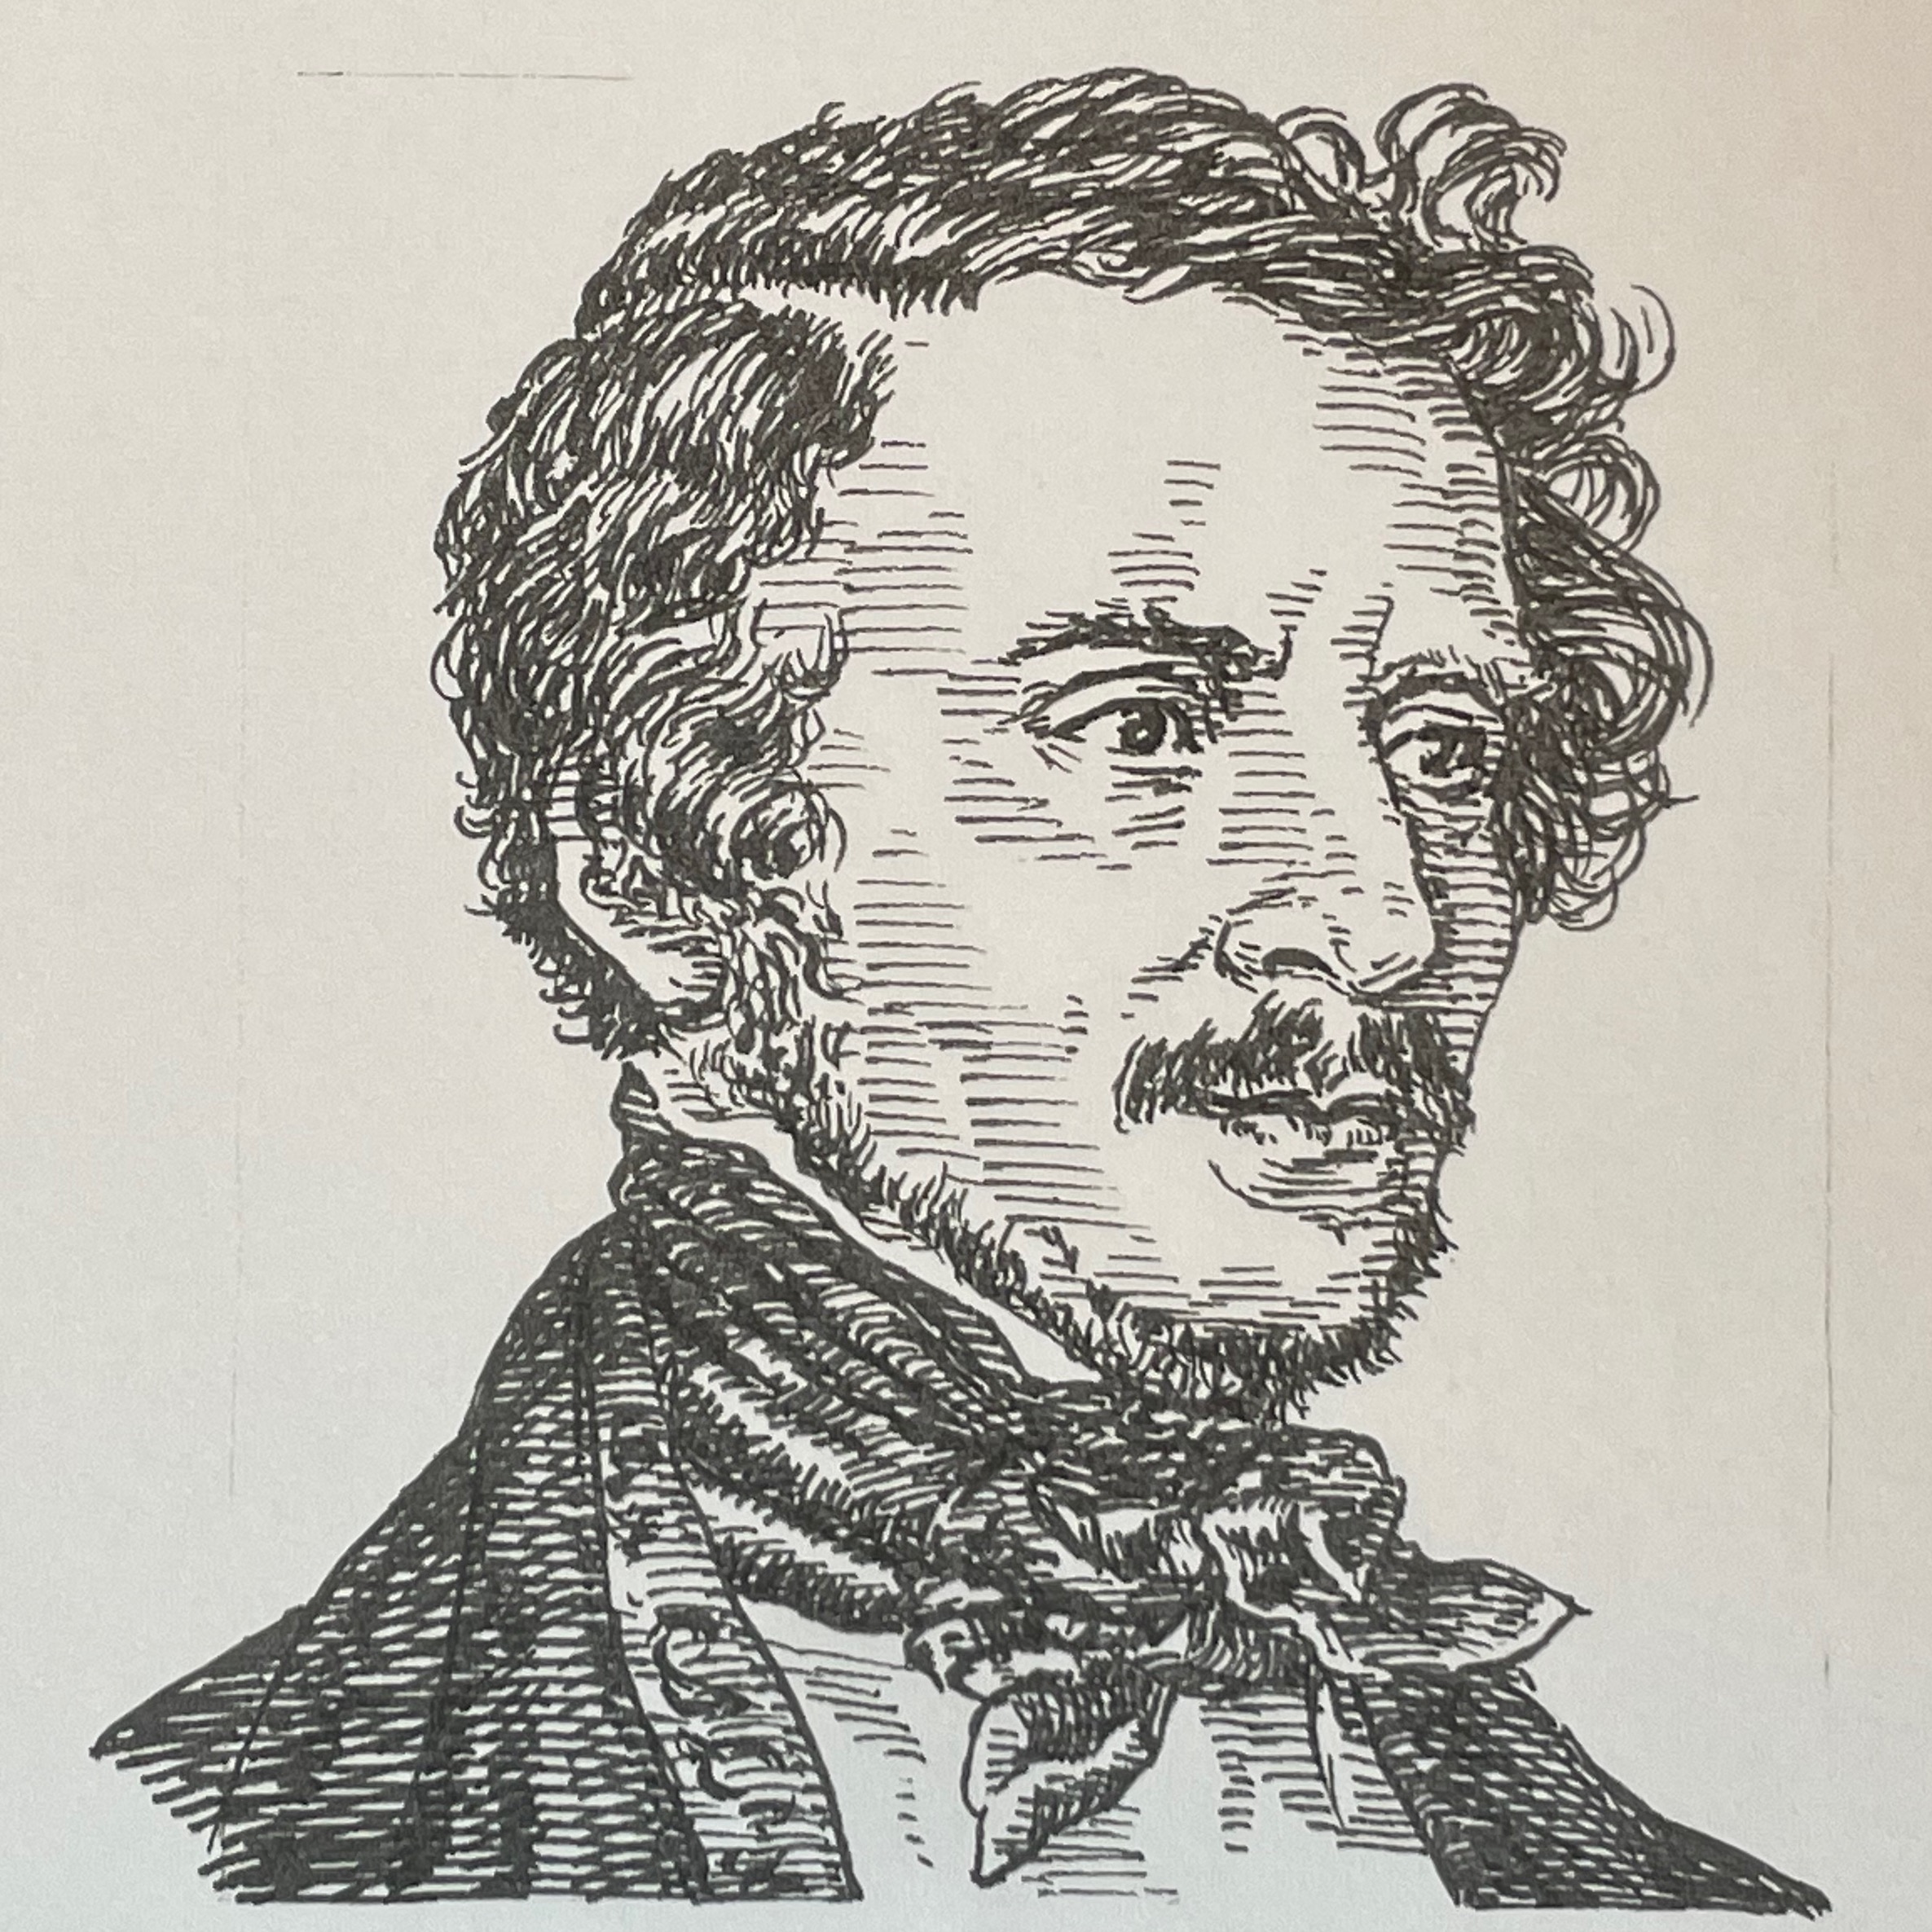 1797-1848を生きた作曲家。ロッシーニ、ベッリーニらとベルカント・オペラで活躍。ロッシーニの後継者としてナポリに移り、オペラ・ブッファ・セリアなどジャンルに拘らず多くのオペラを手がけた。1830年にライバル、ベッリーニと共にミラノで開催された祭典に参加、そこで上演したAnna Bolenaが大成功し、ドニゼッティの名は国際的となる。その成功にはライバル、ベッリーニの作風が影響していたとされる。その後1840年に初演されたグランド・オペラLa favoritaを手がけた。そしてドニゼッティ作品はその後のヴェルディへと受け継がれる。